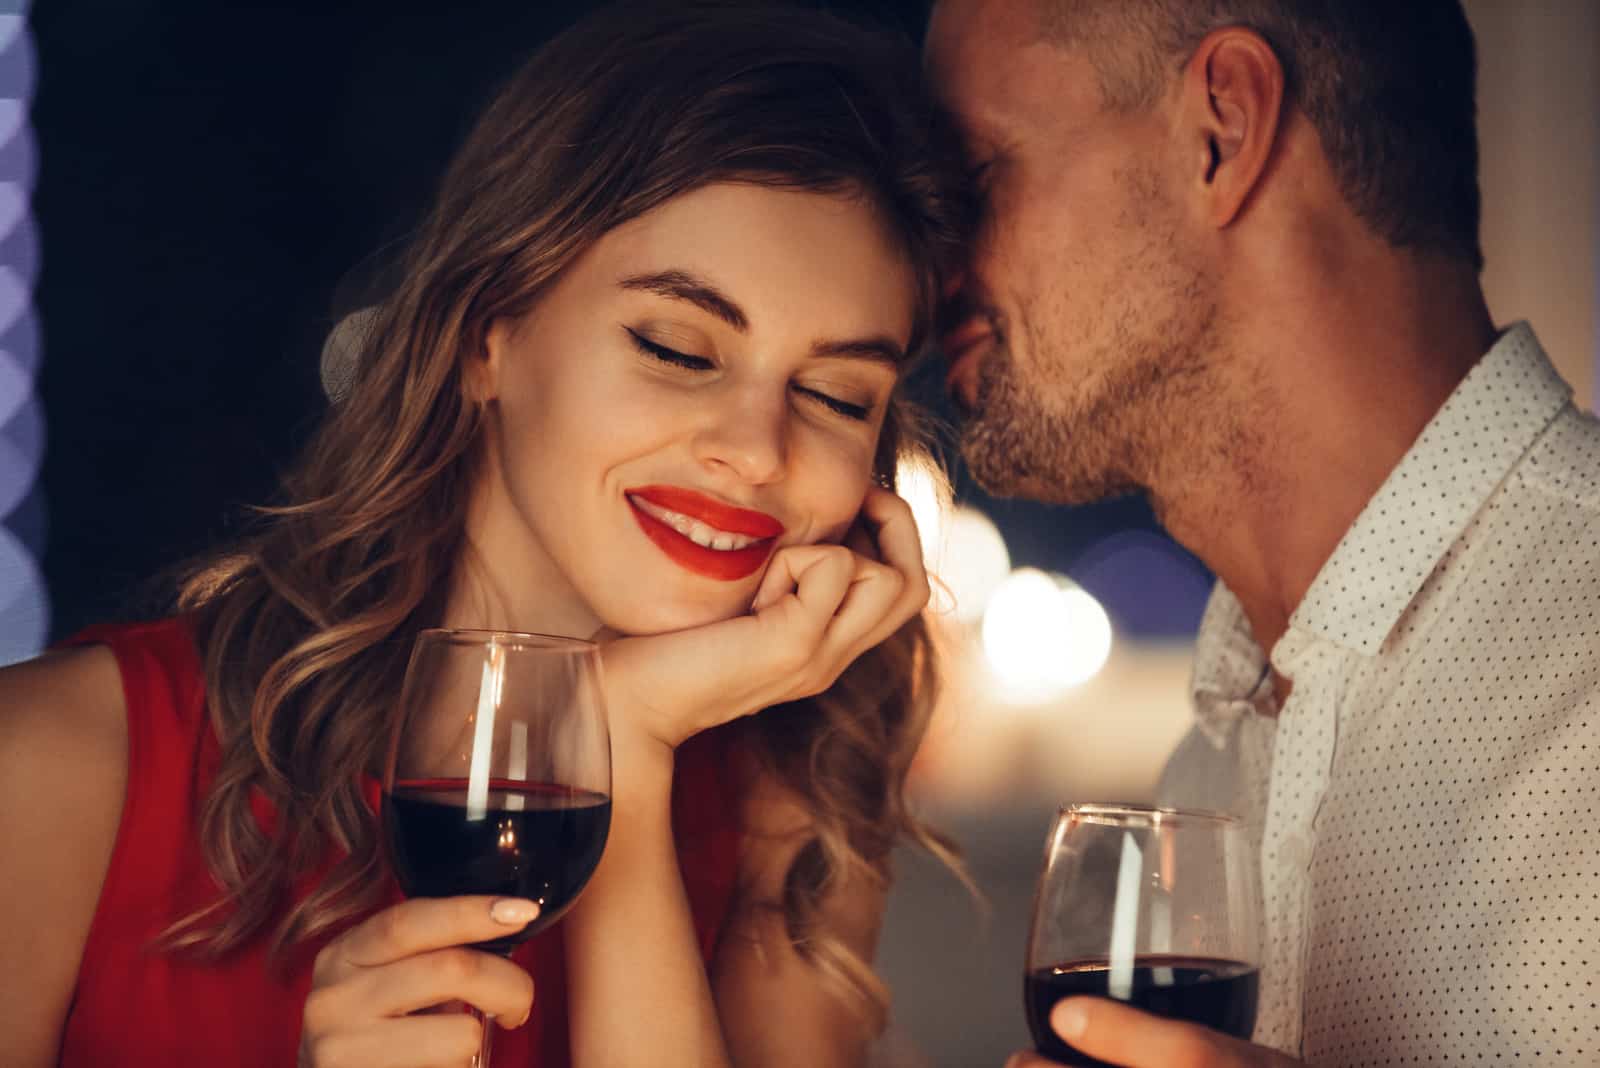 un homme chuchote à l'oreille d'une femme en buvant du vin